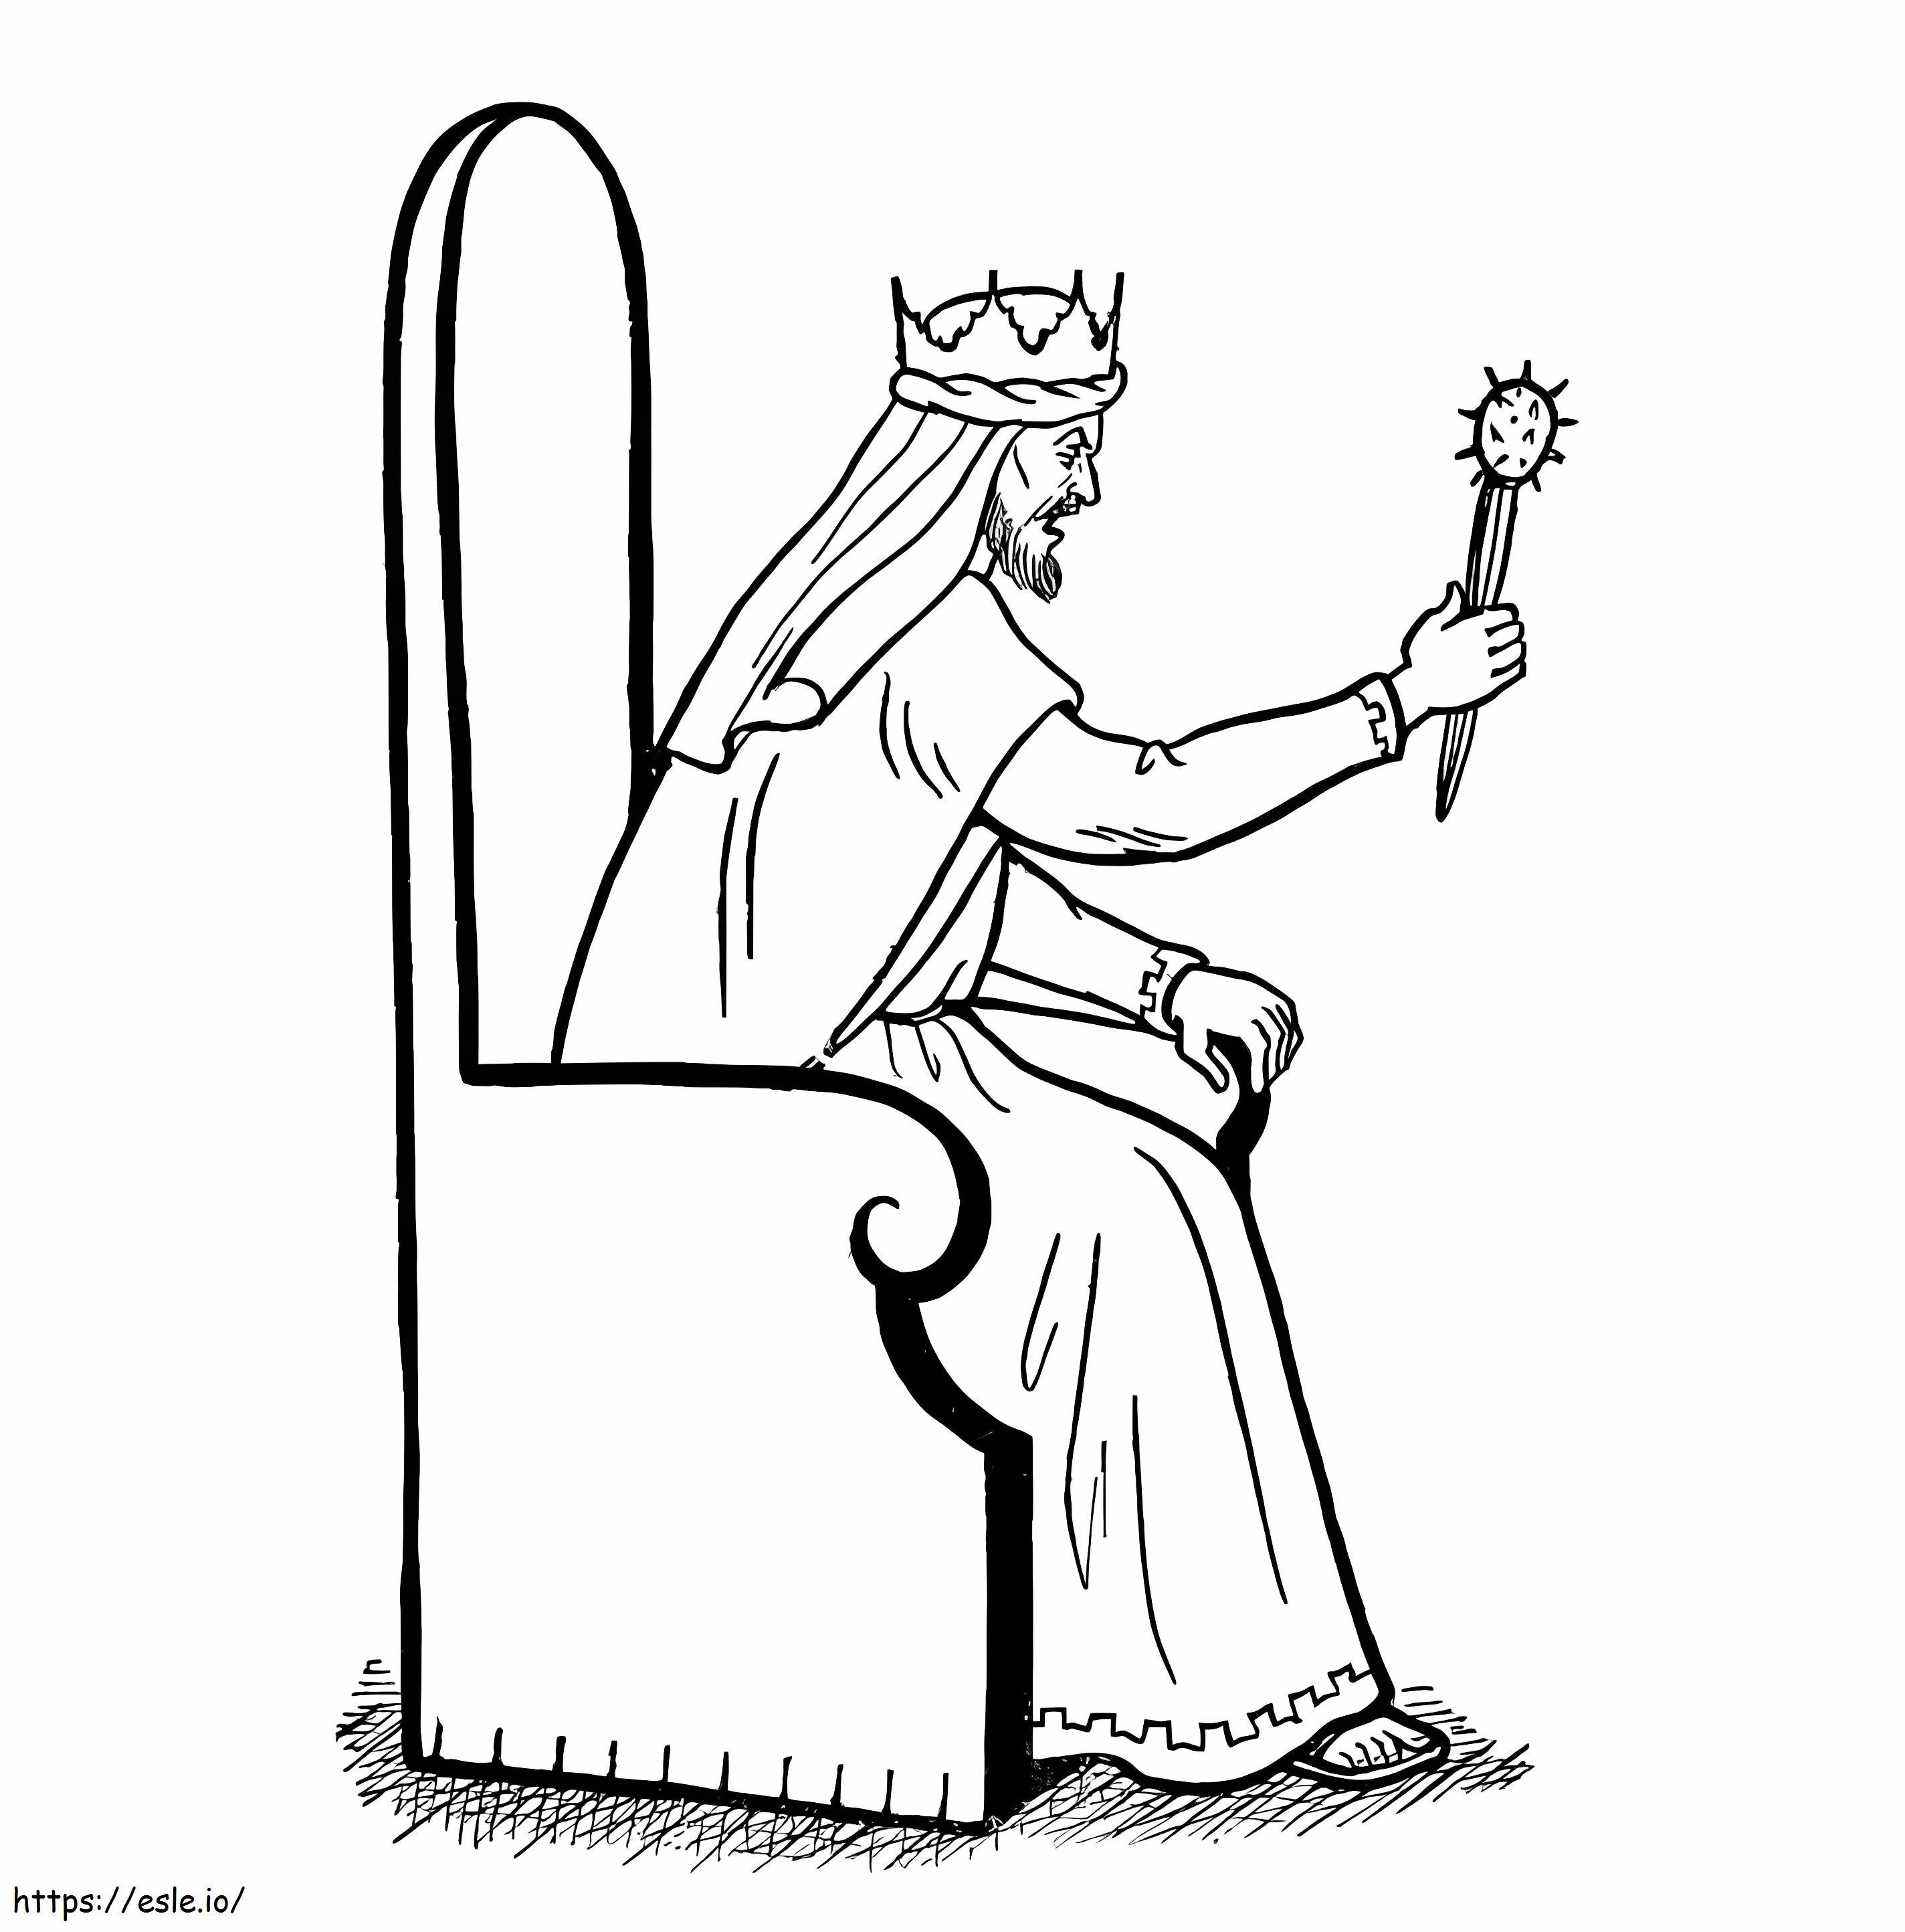 Rey enojado sentado en una silla para colorear